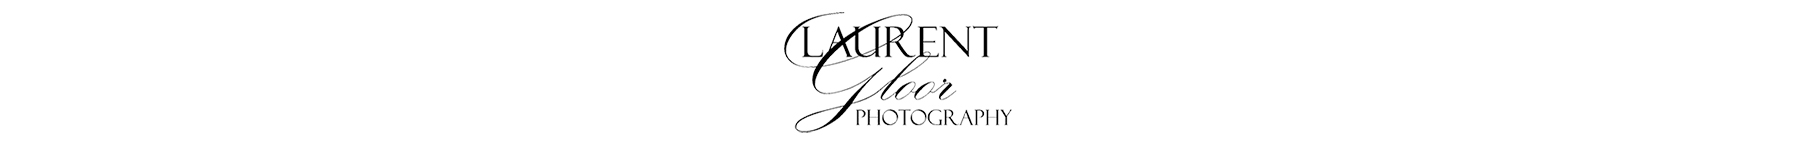 Laurent Gloor Photography